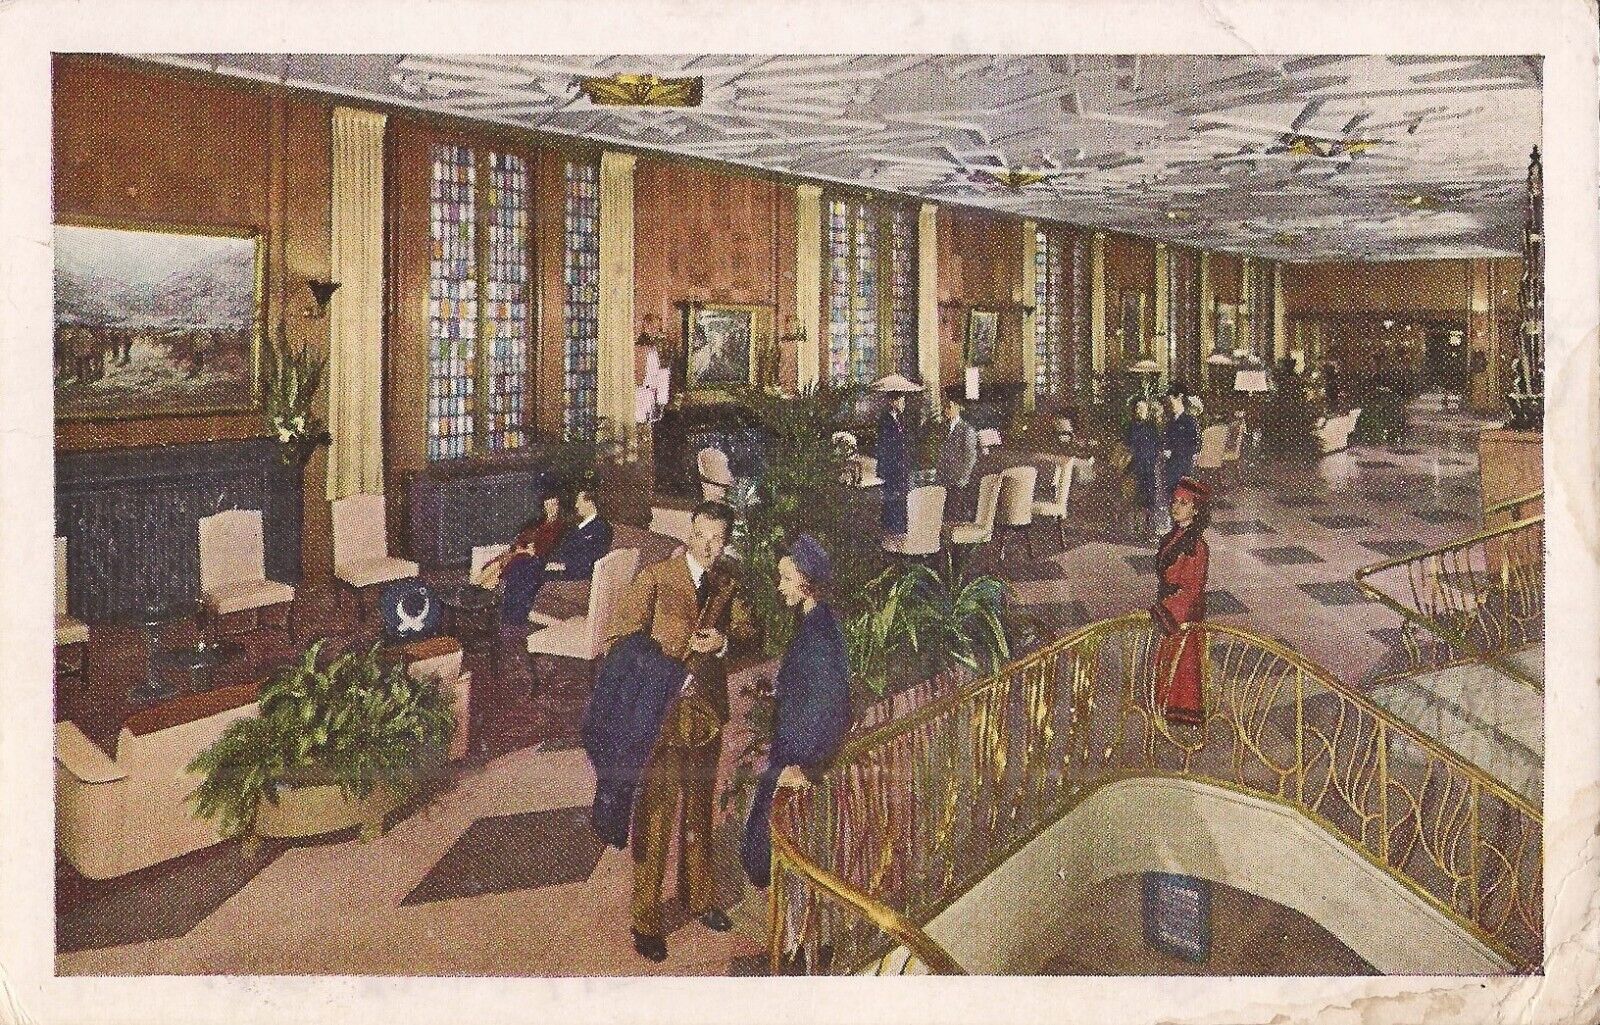 Chicago, ILLINOIS - Bismarck Hotel - 1942